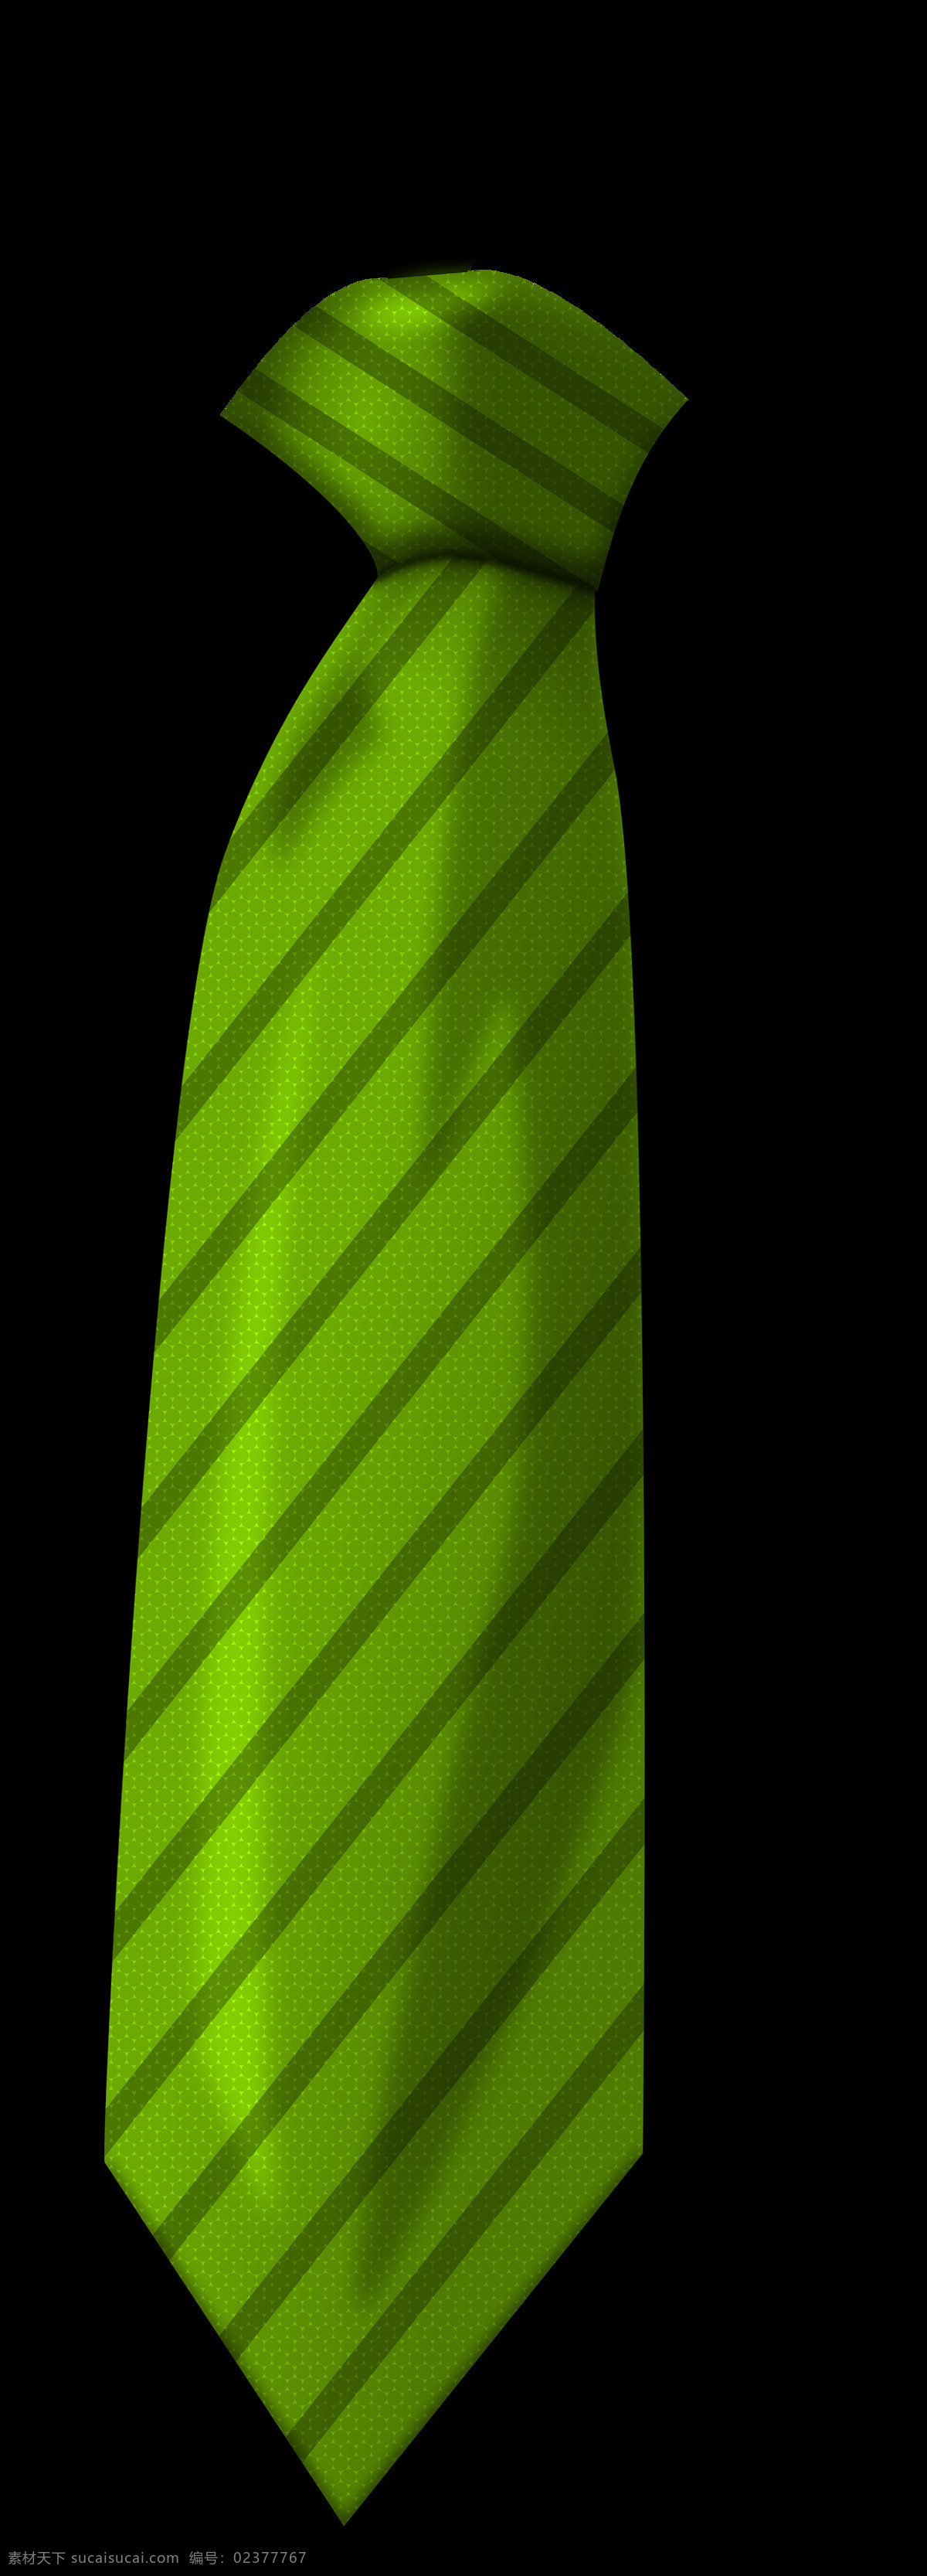 绿色 领带 免 抠 透明 图 层 男士领带图片 领带节 短领带 ps 摸领带 扶领带 细领带 西装领带 女士领带 商务领带 正装领带 休闲领带 领带图片 条纹领带 格子领带